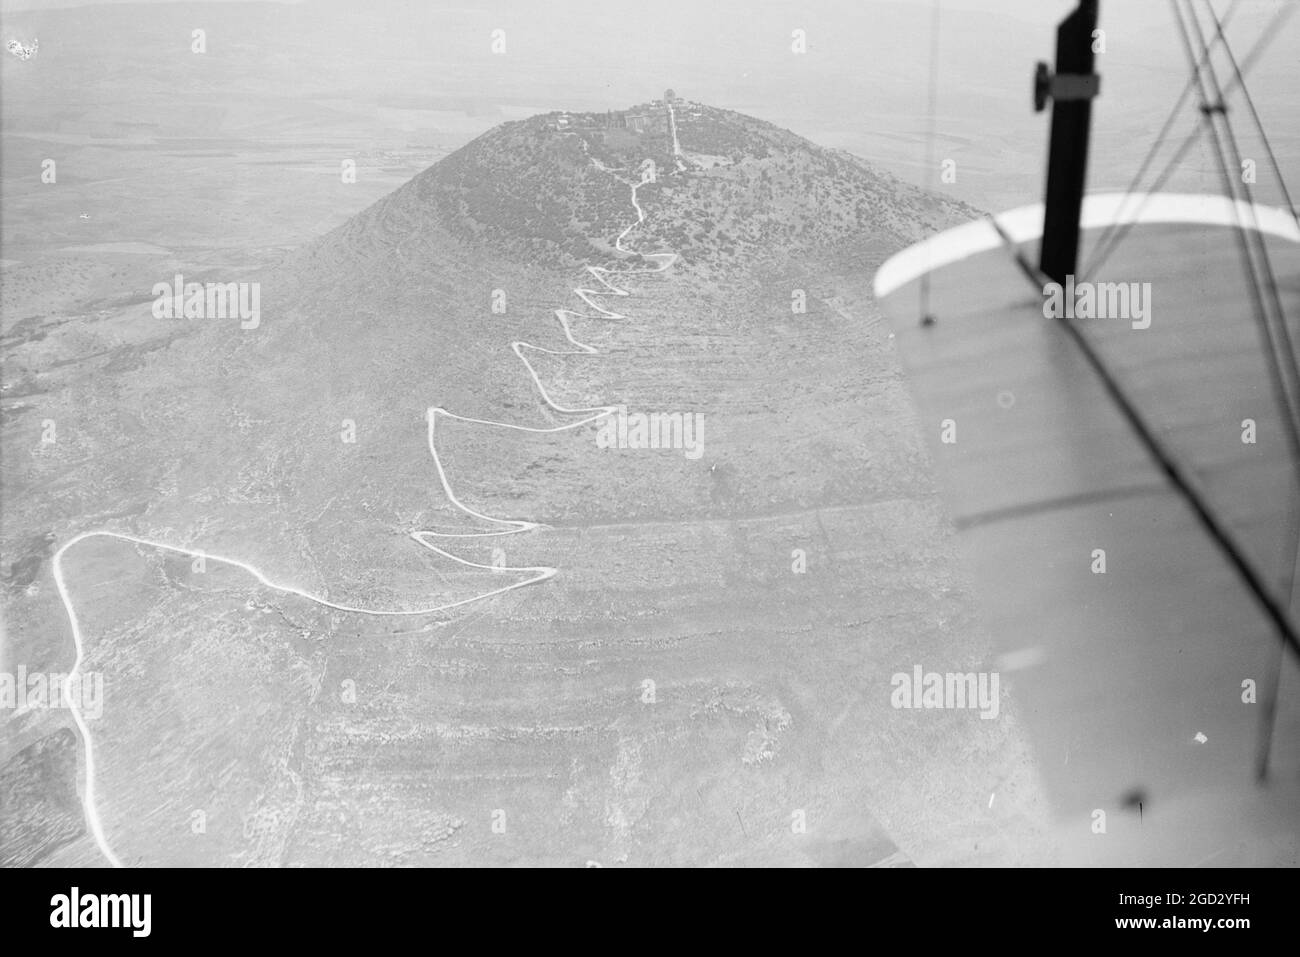 Vista aerea della strada a motore a zig-zag su una montagna in Israele (probabilmente il Monte Tabor) ca. 1937 Foto Stock